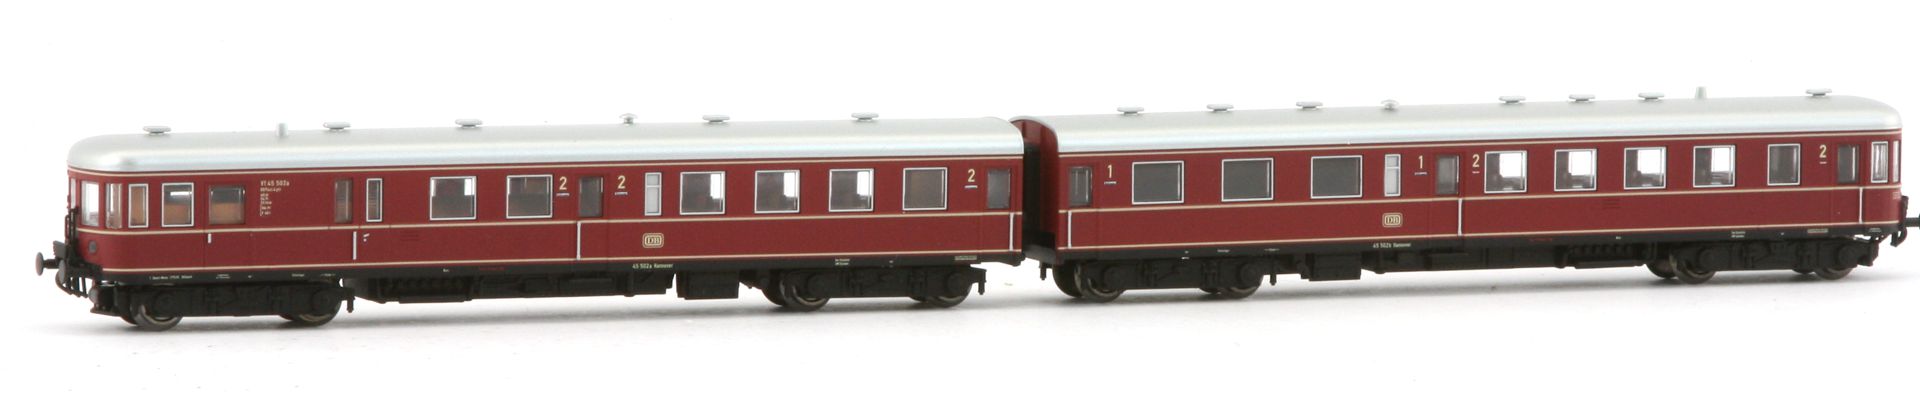 Kres 51040021 - Triebzug VT 45 'Stettin', 45 502a/b, DB, Ep.III, 2-teilig, DC-Digital